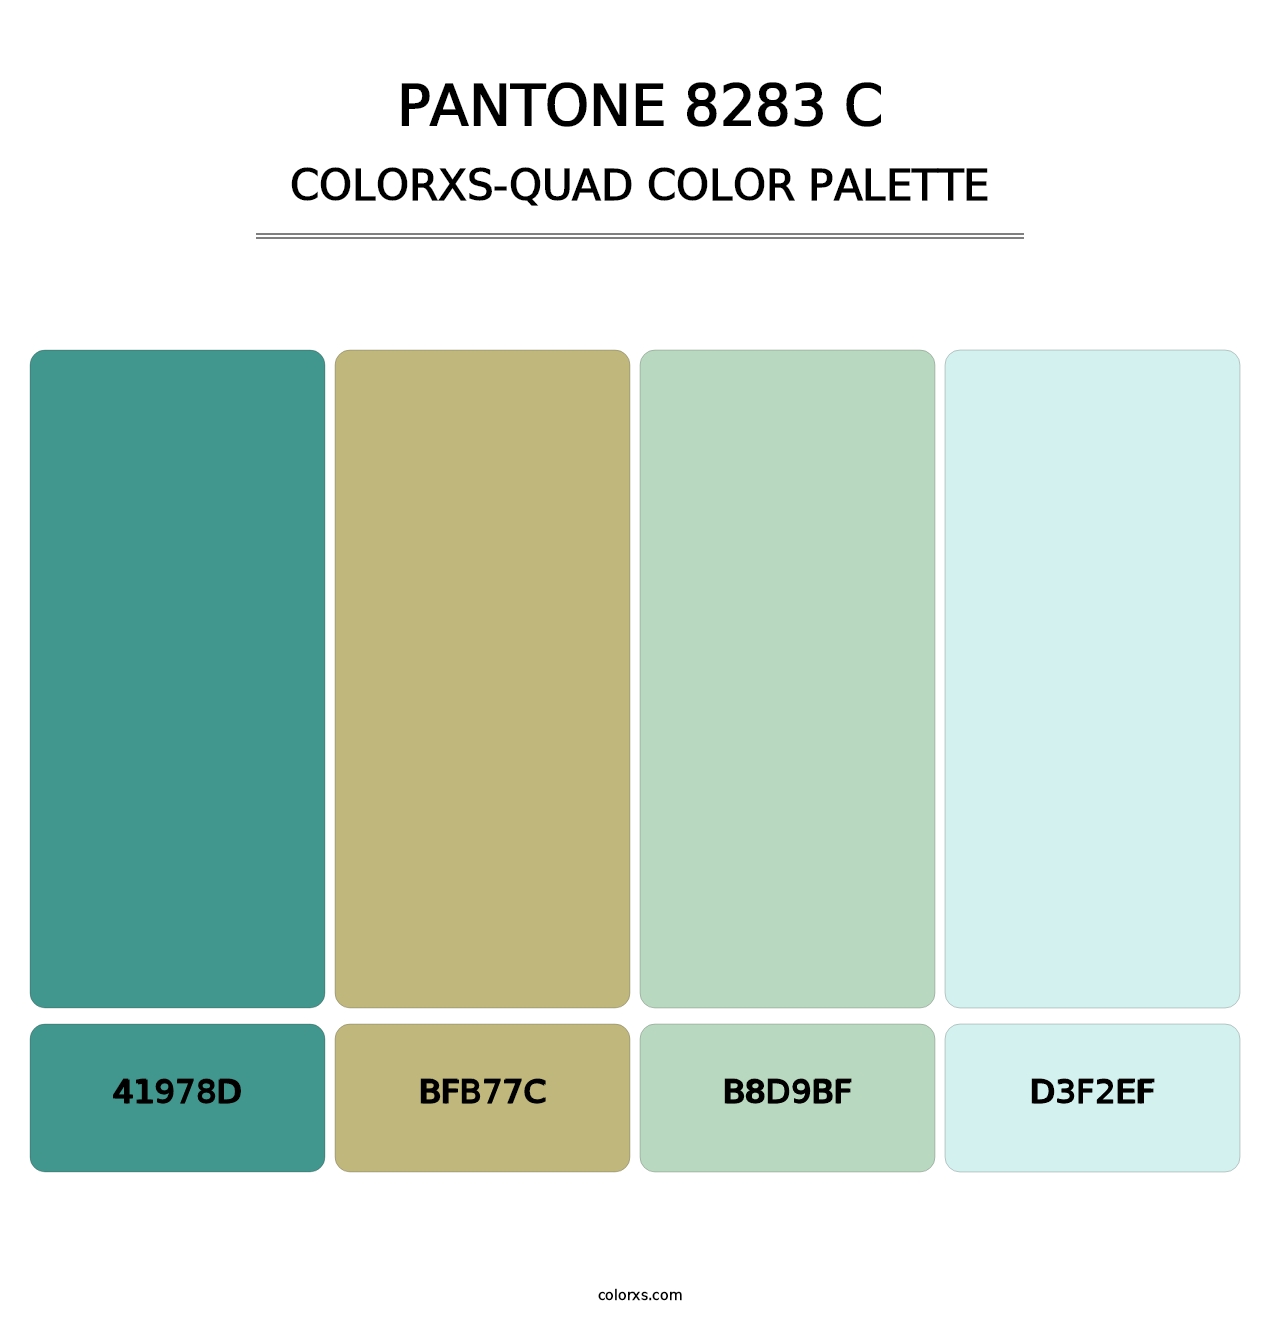 PANTONE 8283 C - Colorxs Quad Palette